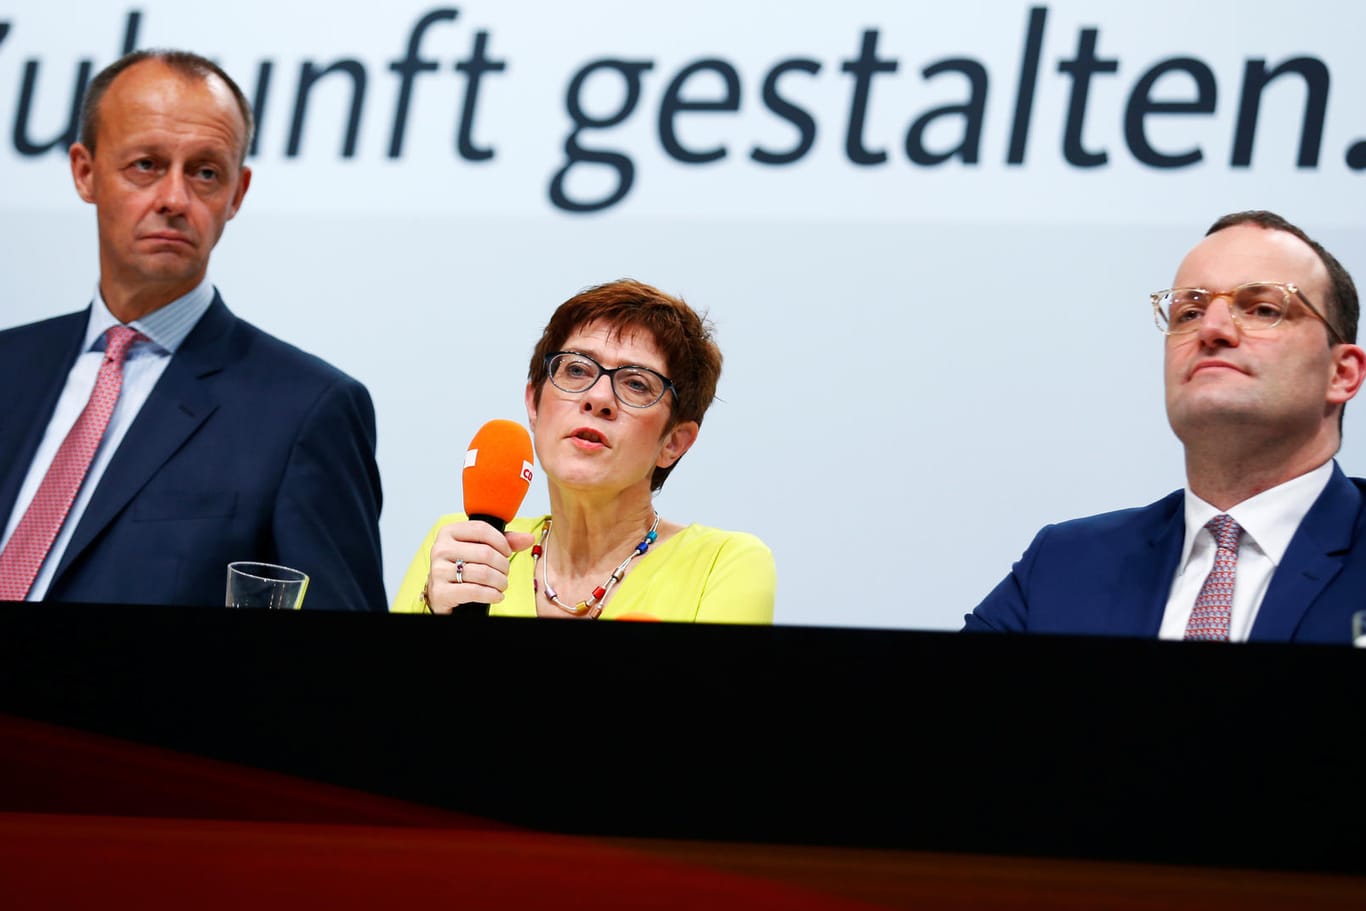 Friedrich Merz (links), Annegret Kramp-Karrenbauer oder Jens Spahn? Eine neue Umfrage zeigt, wen die Deutschen am ehesten als Kanzlerkandidat sehen.